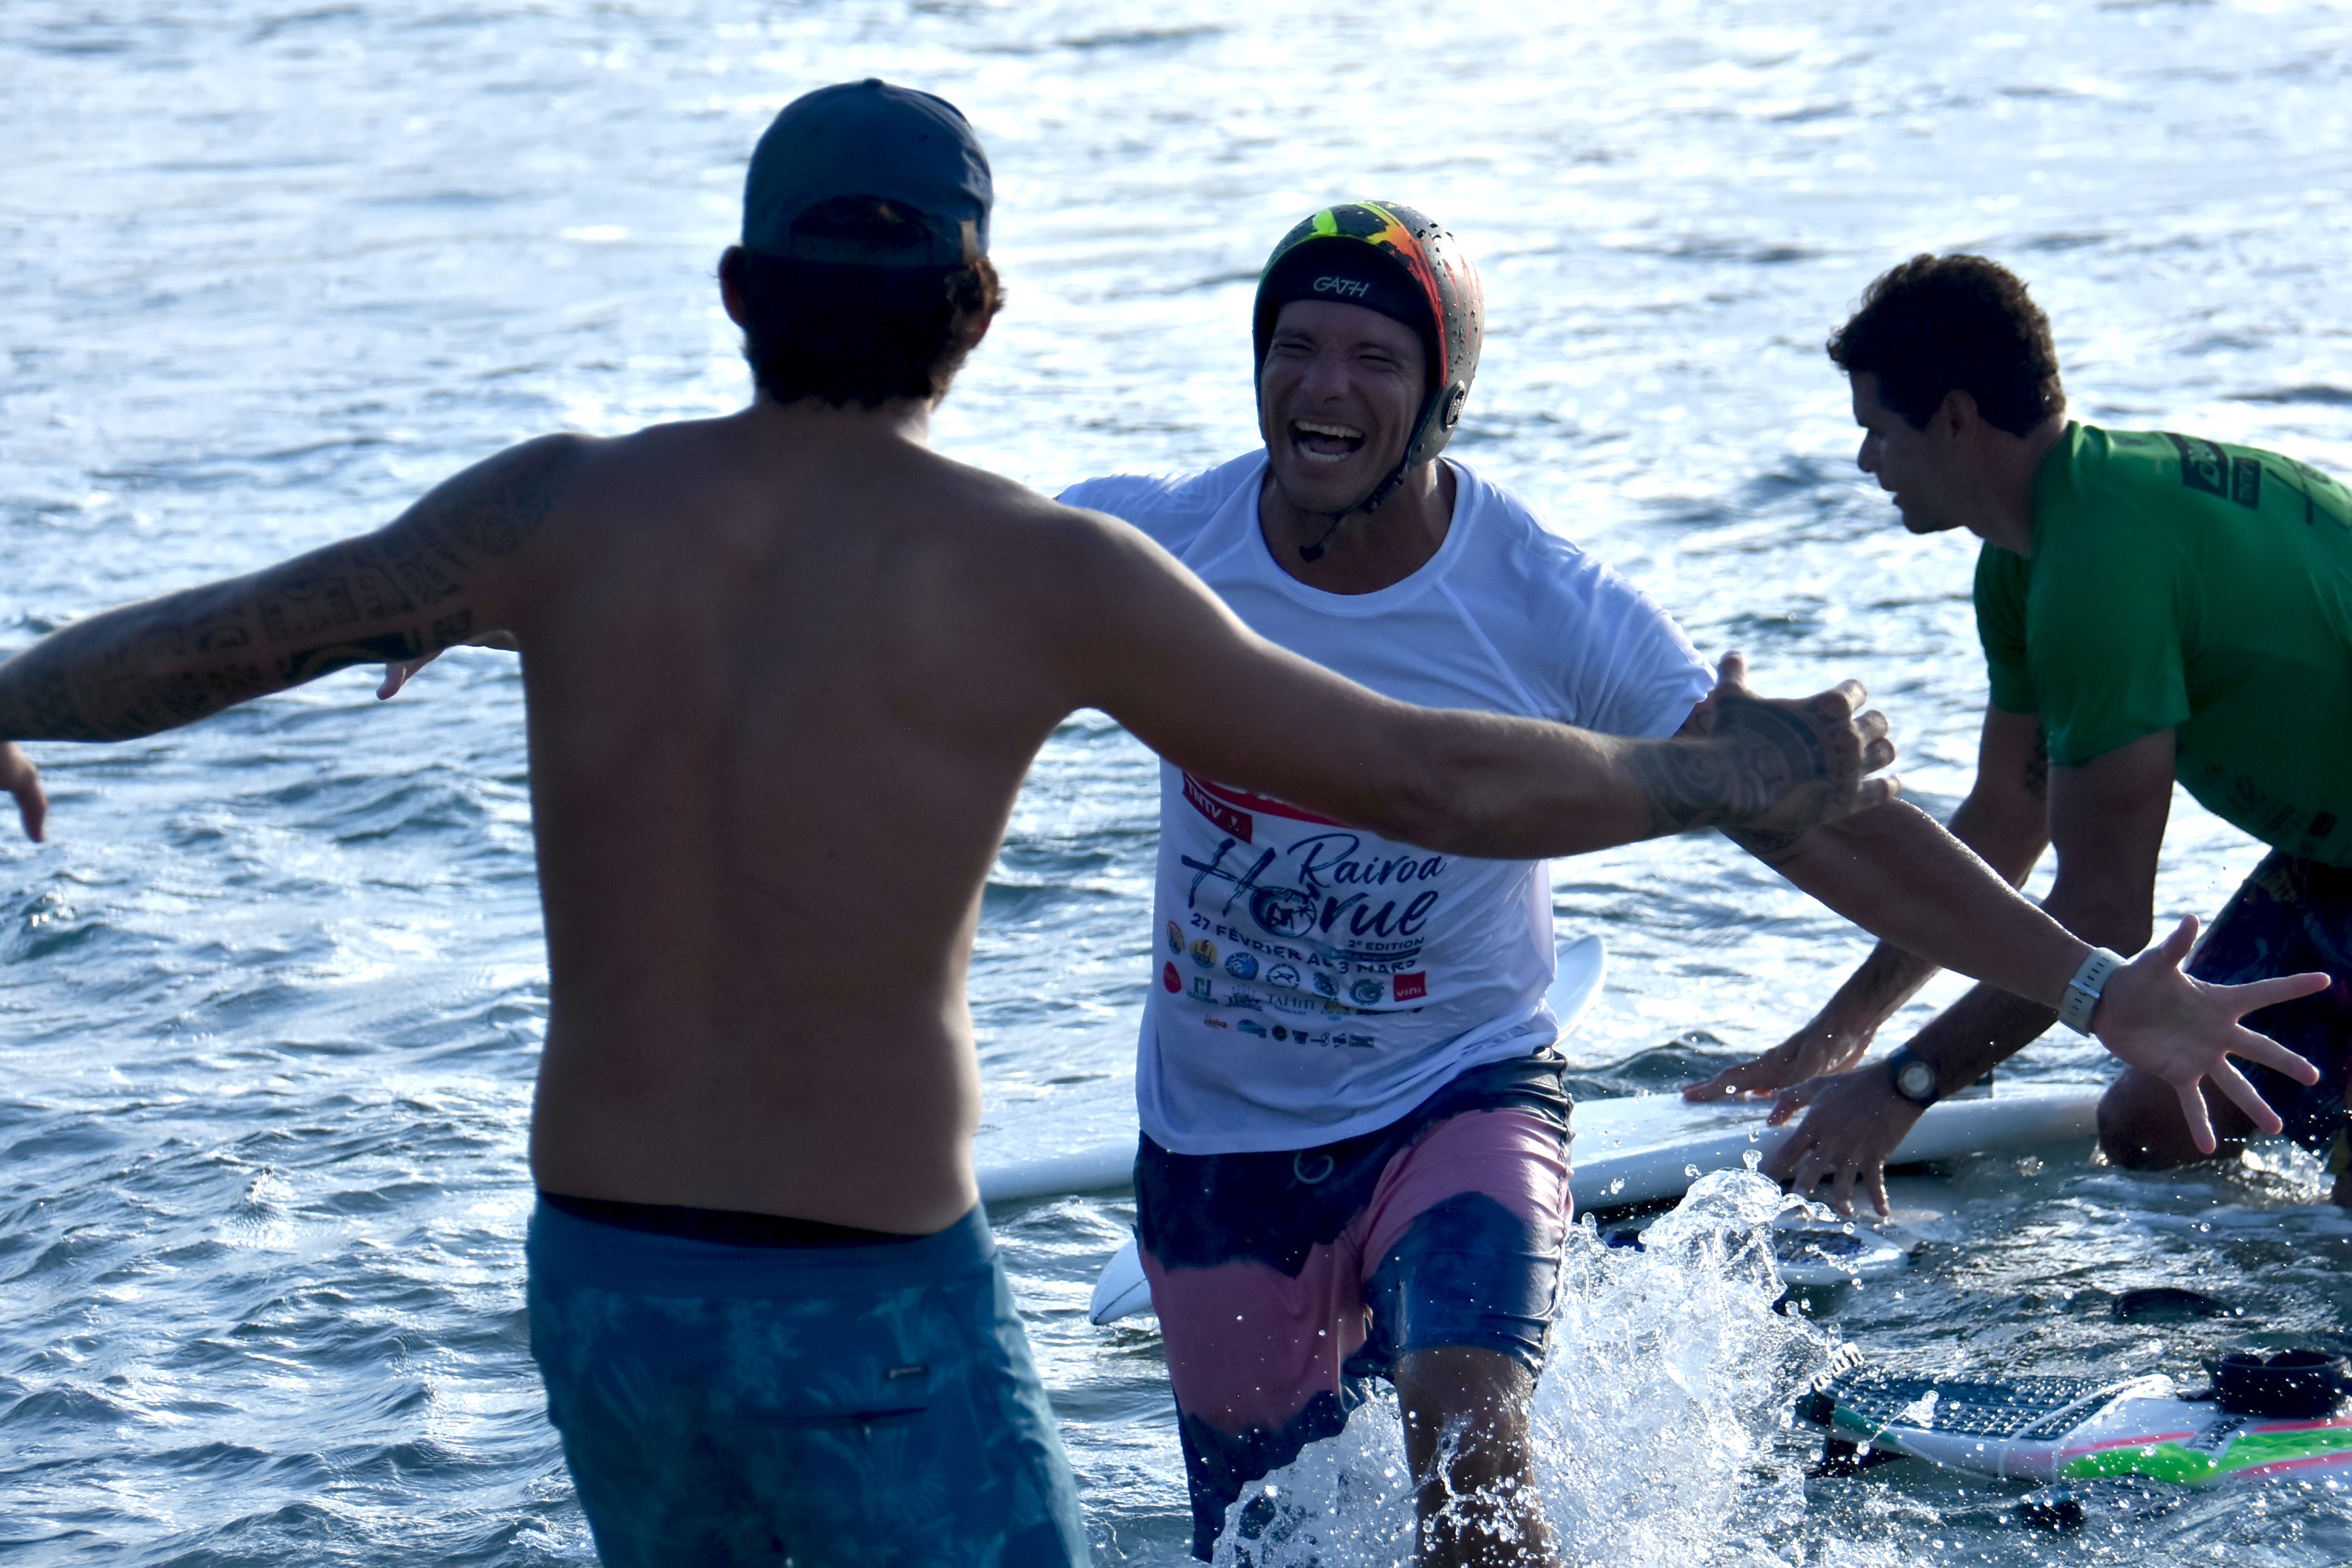 Grâce à une dernière vague surfée à 20 secondes du buzzer, Ariimoana David s'est offert la victoire à la Rairoa Horue, succédant à Kauli Vaast au palmarès.